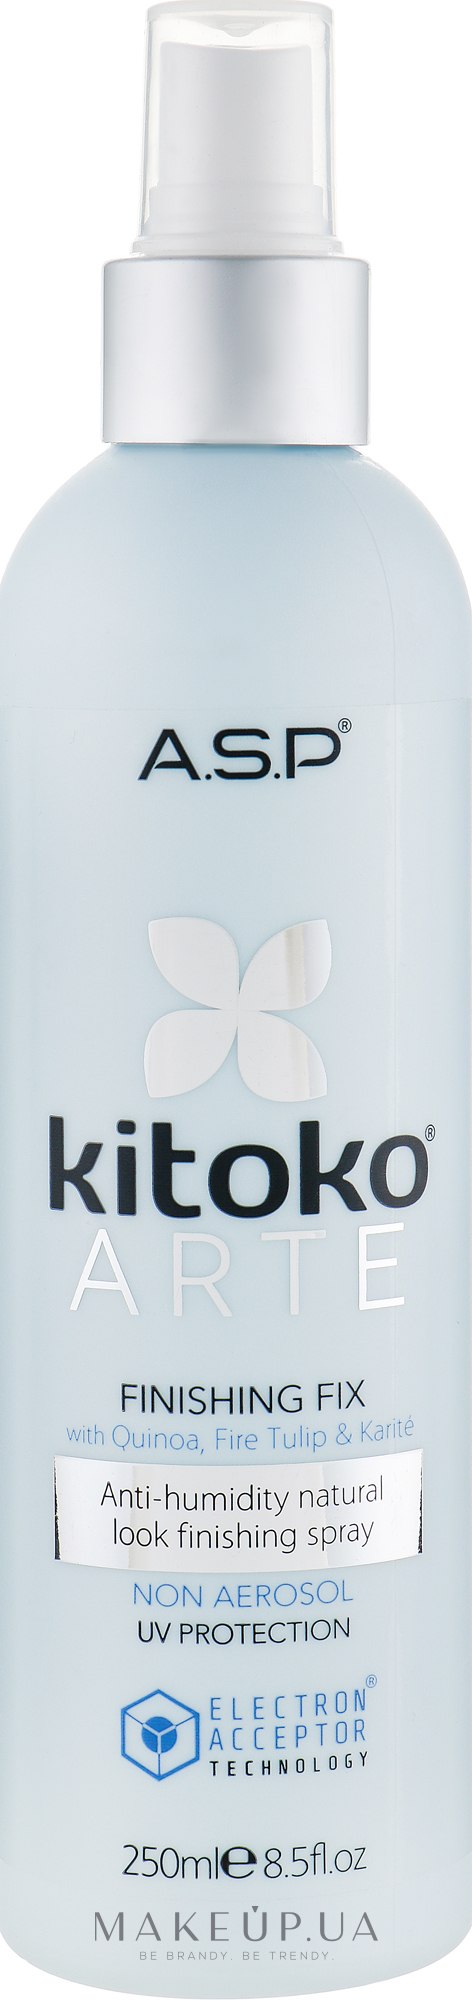 Неаерозольний лак для волосся - ASP Kitoko Arte Finishing Fix — фото 250ml